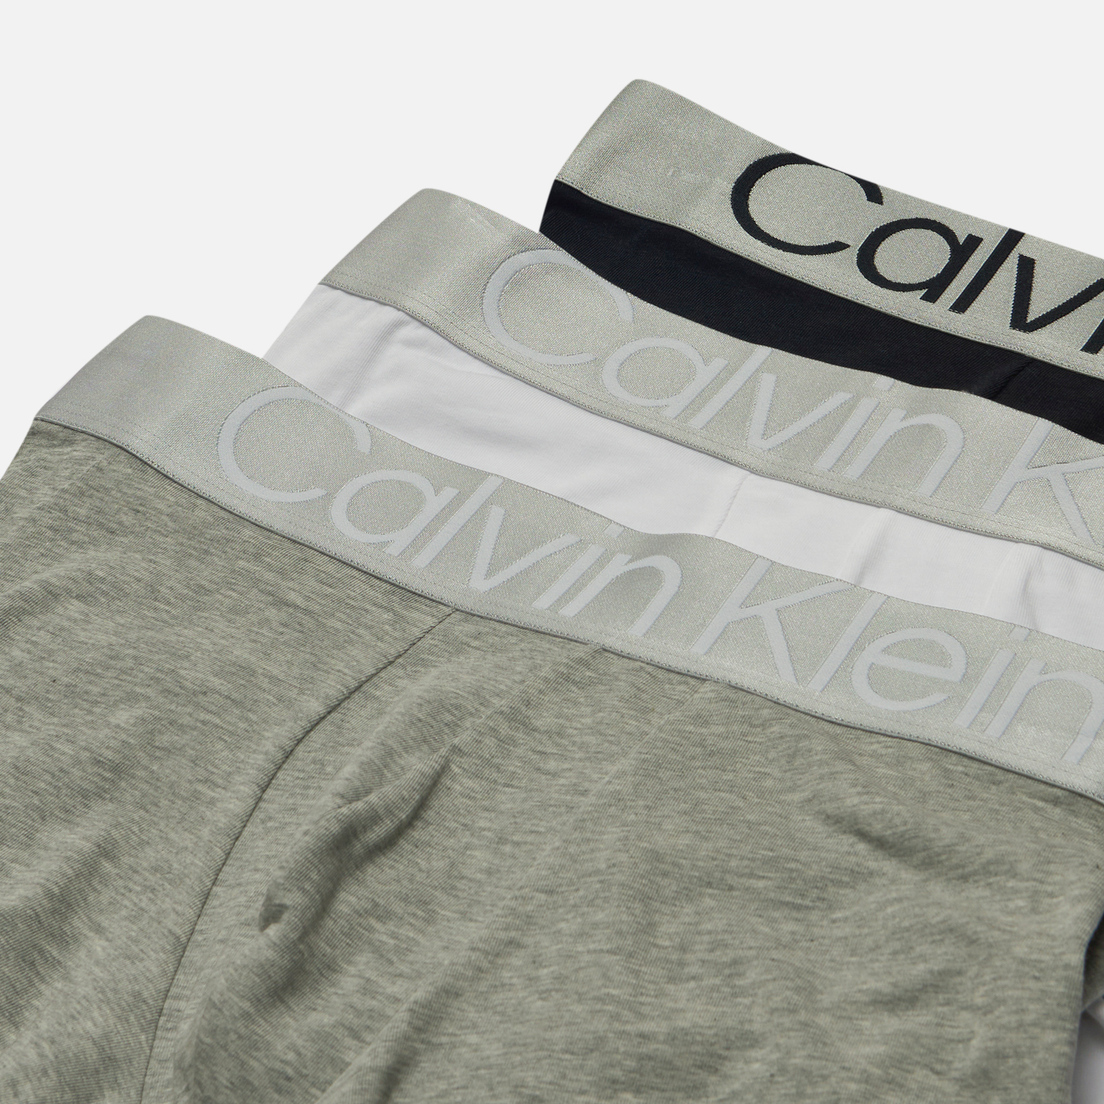 Calvin Klein Underwear Комплект мужских трусов 3-Pack Trunk Steel Cotton